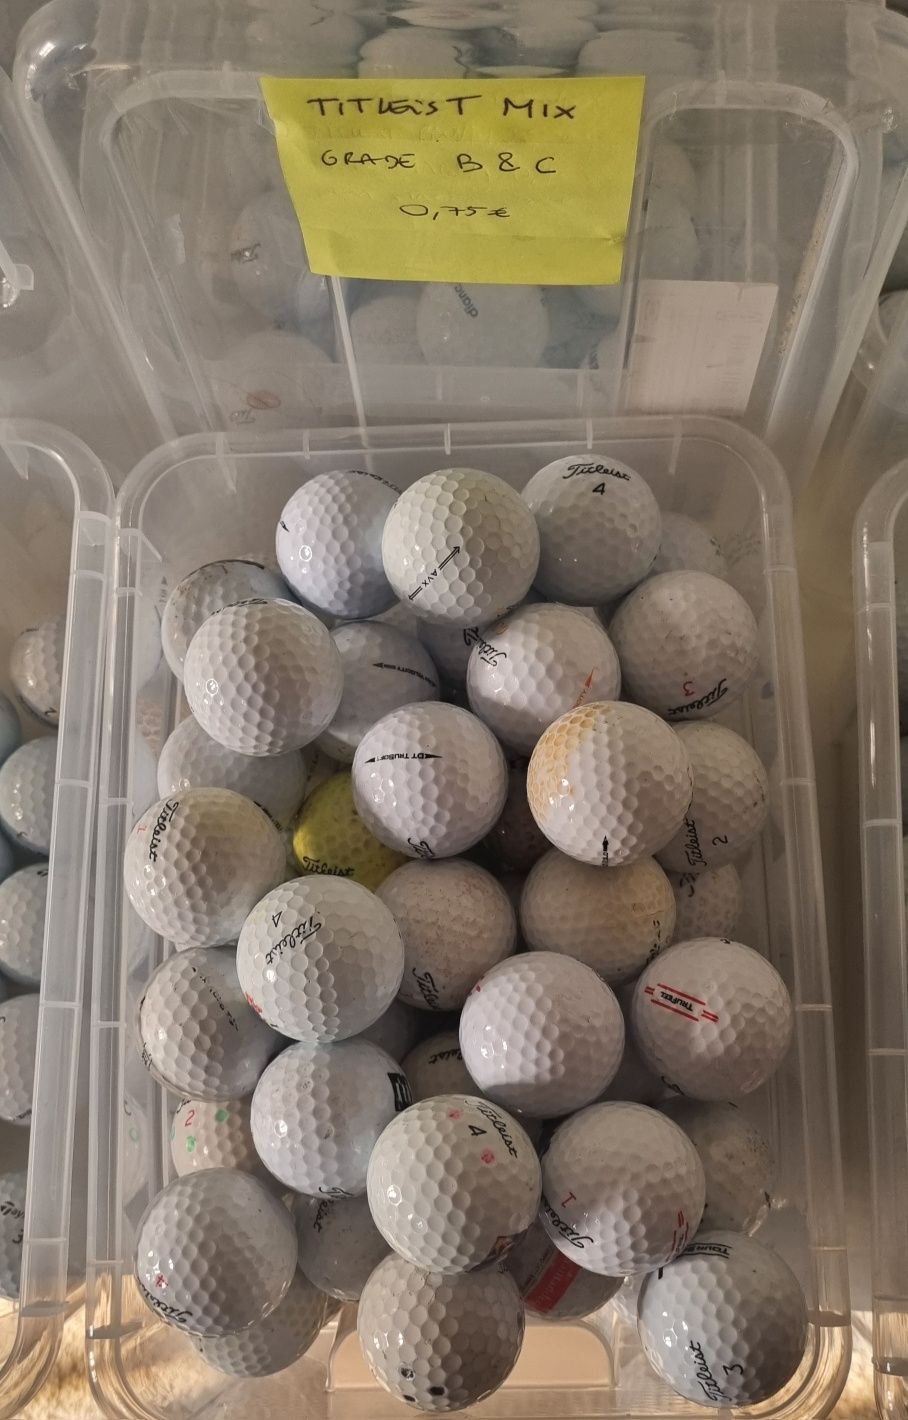 Bolas de golfe Titleist Mix com marcas de uso BO014